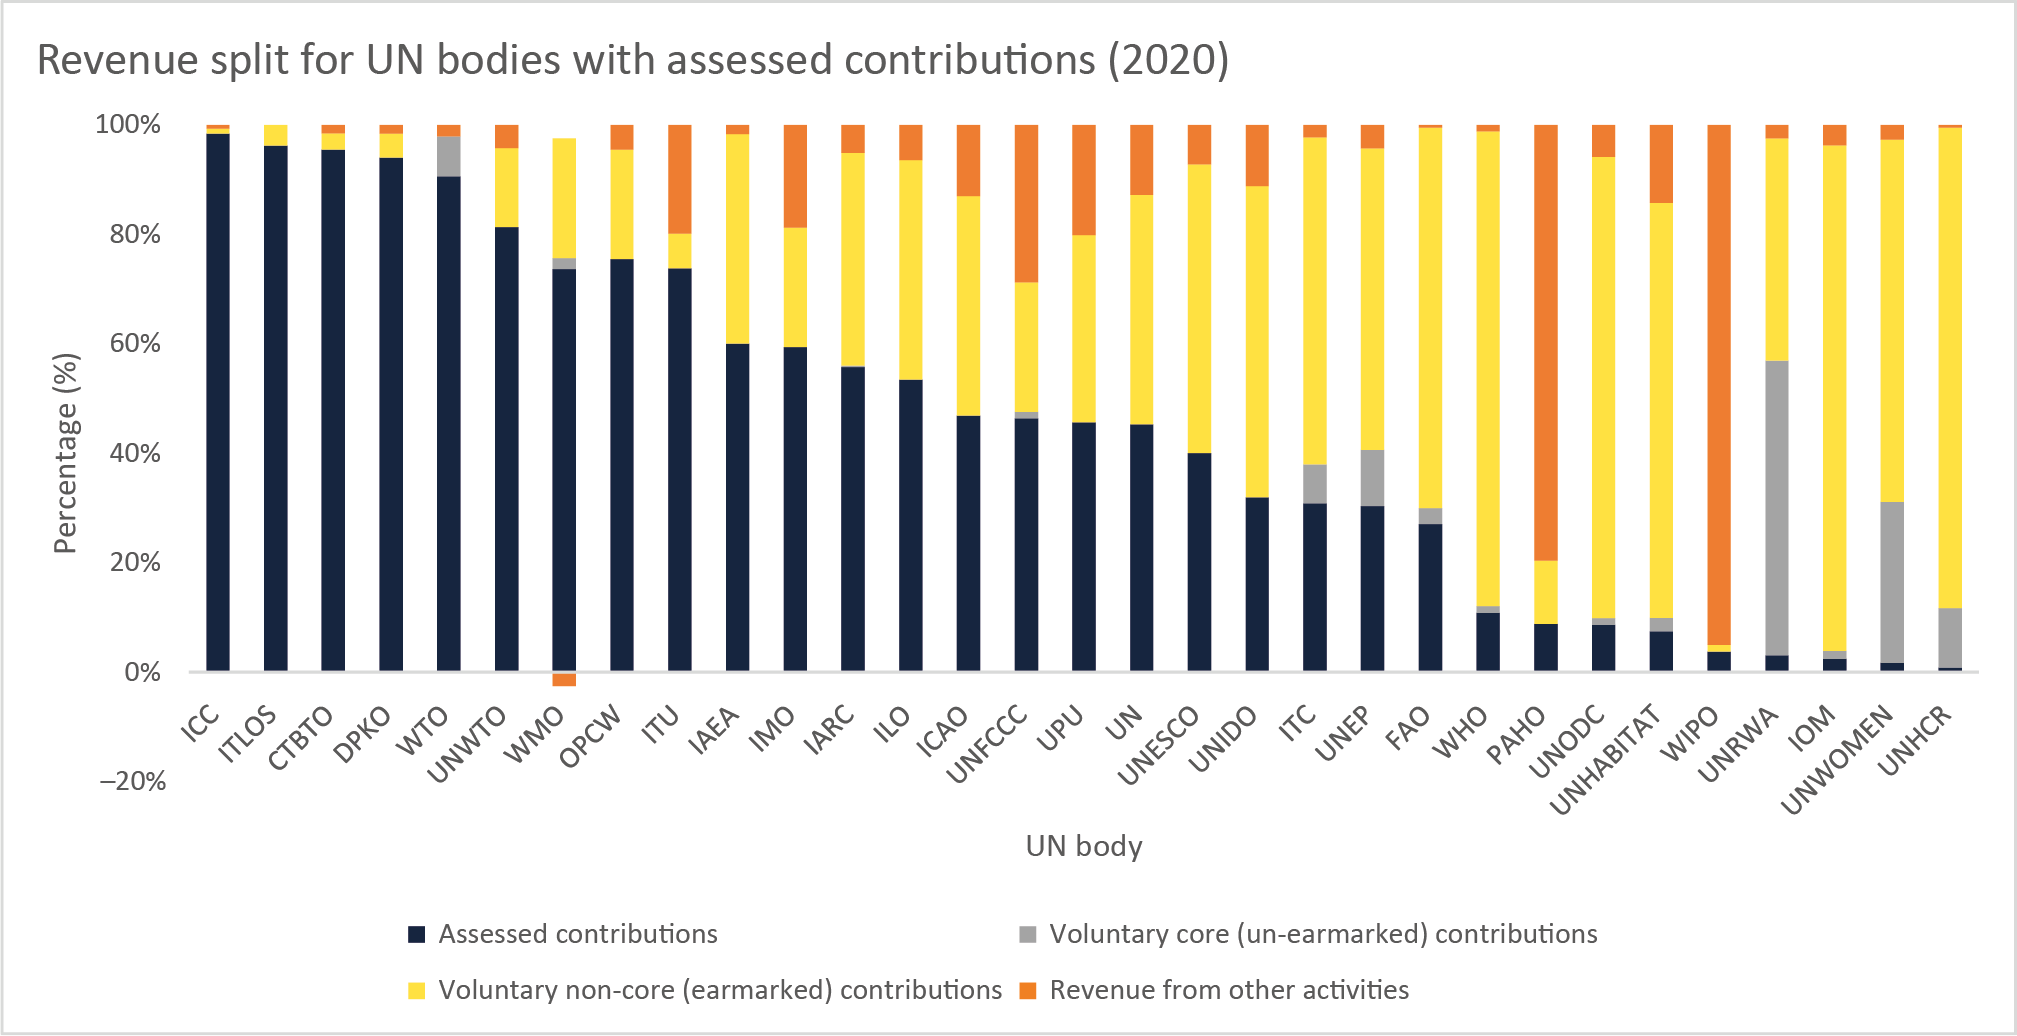 Revenue split for UN bodies assessed contributions (2020, %)